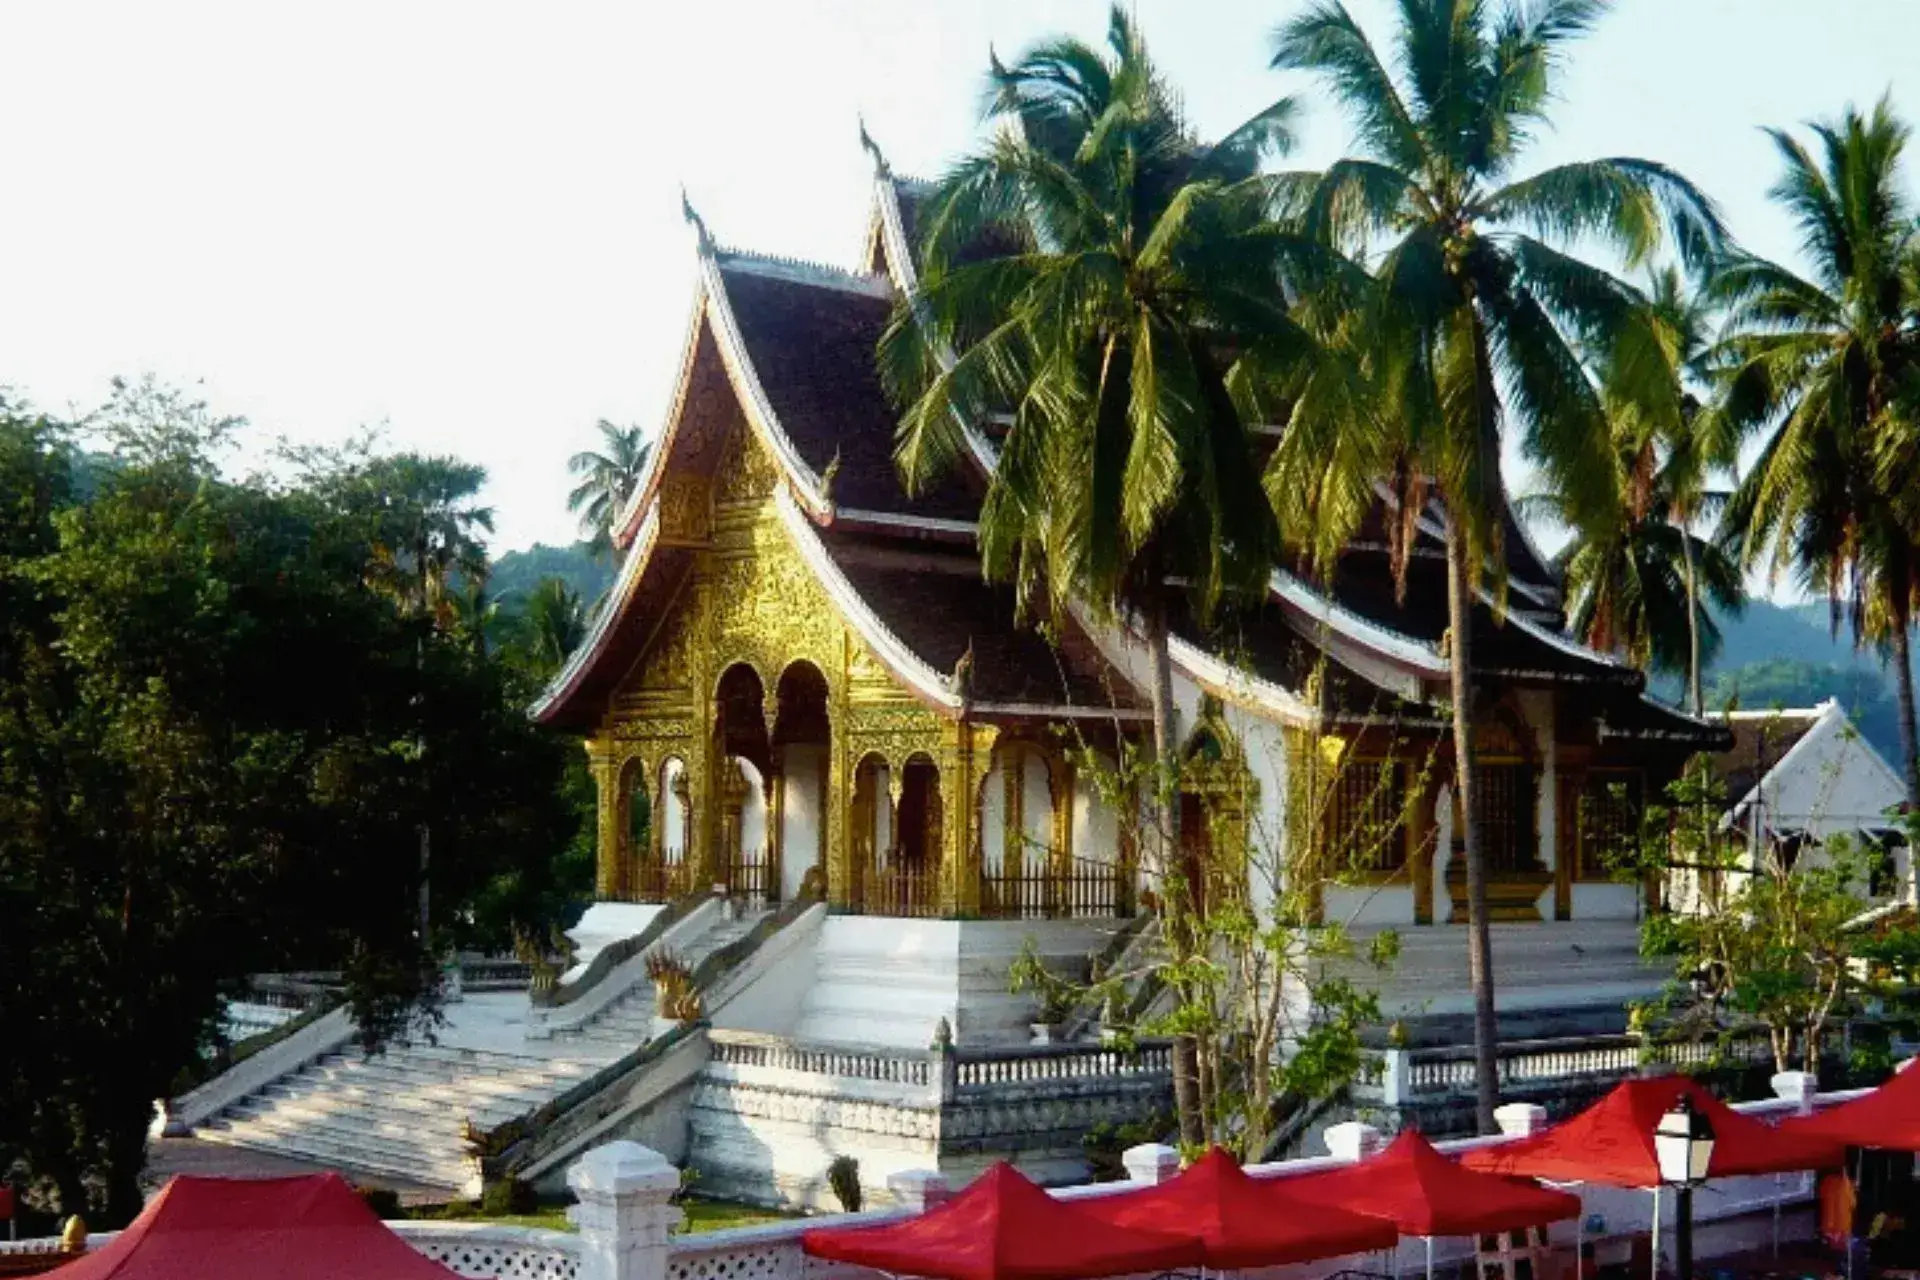 Templo con tejado a dos aguas y escaleras para acceder a la entrada que es dorada